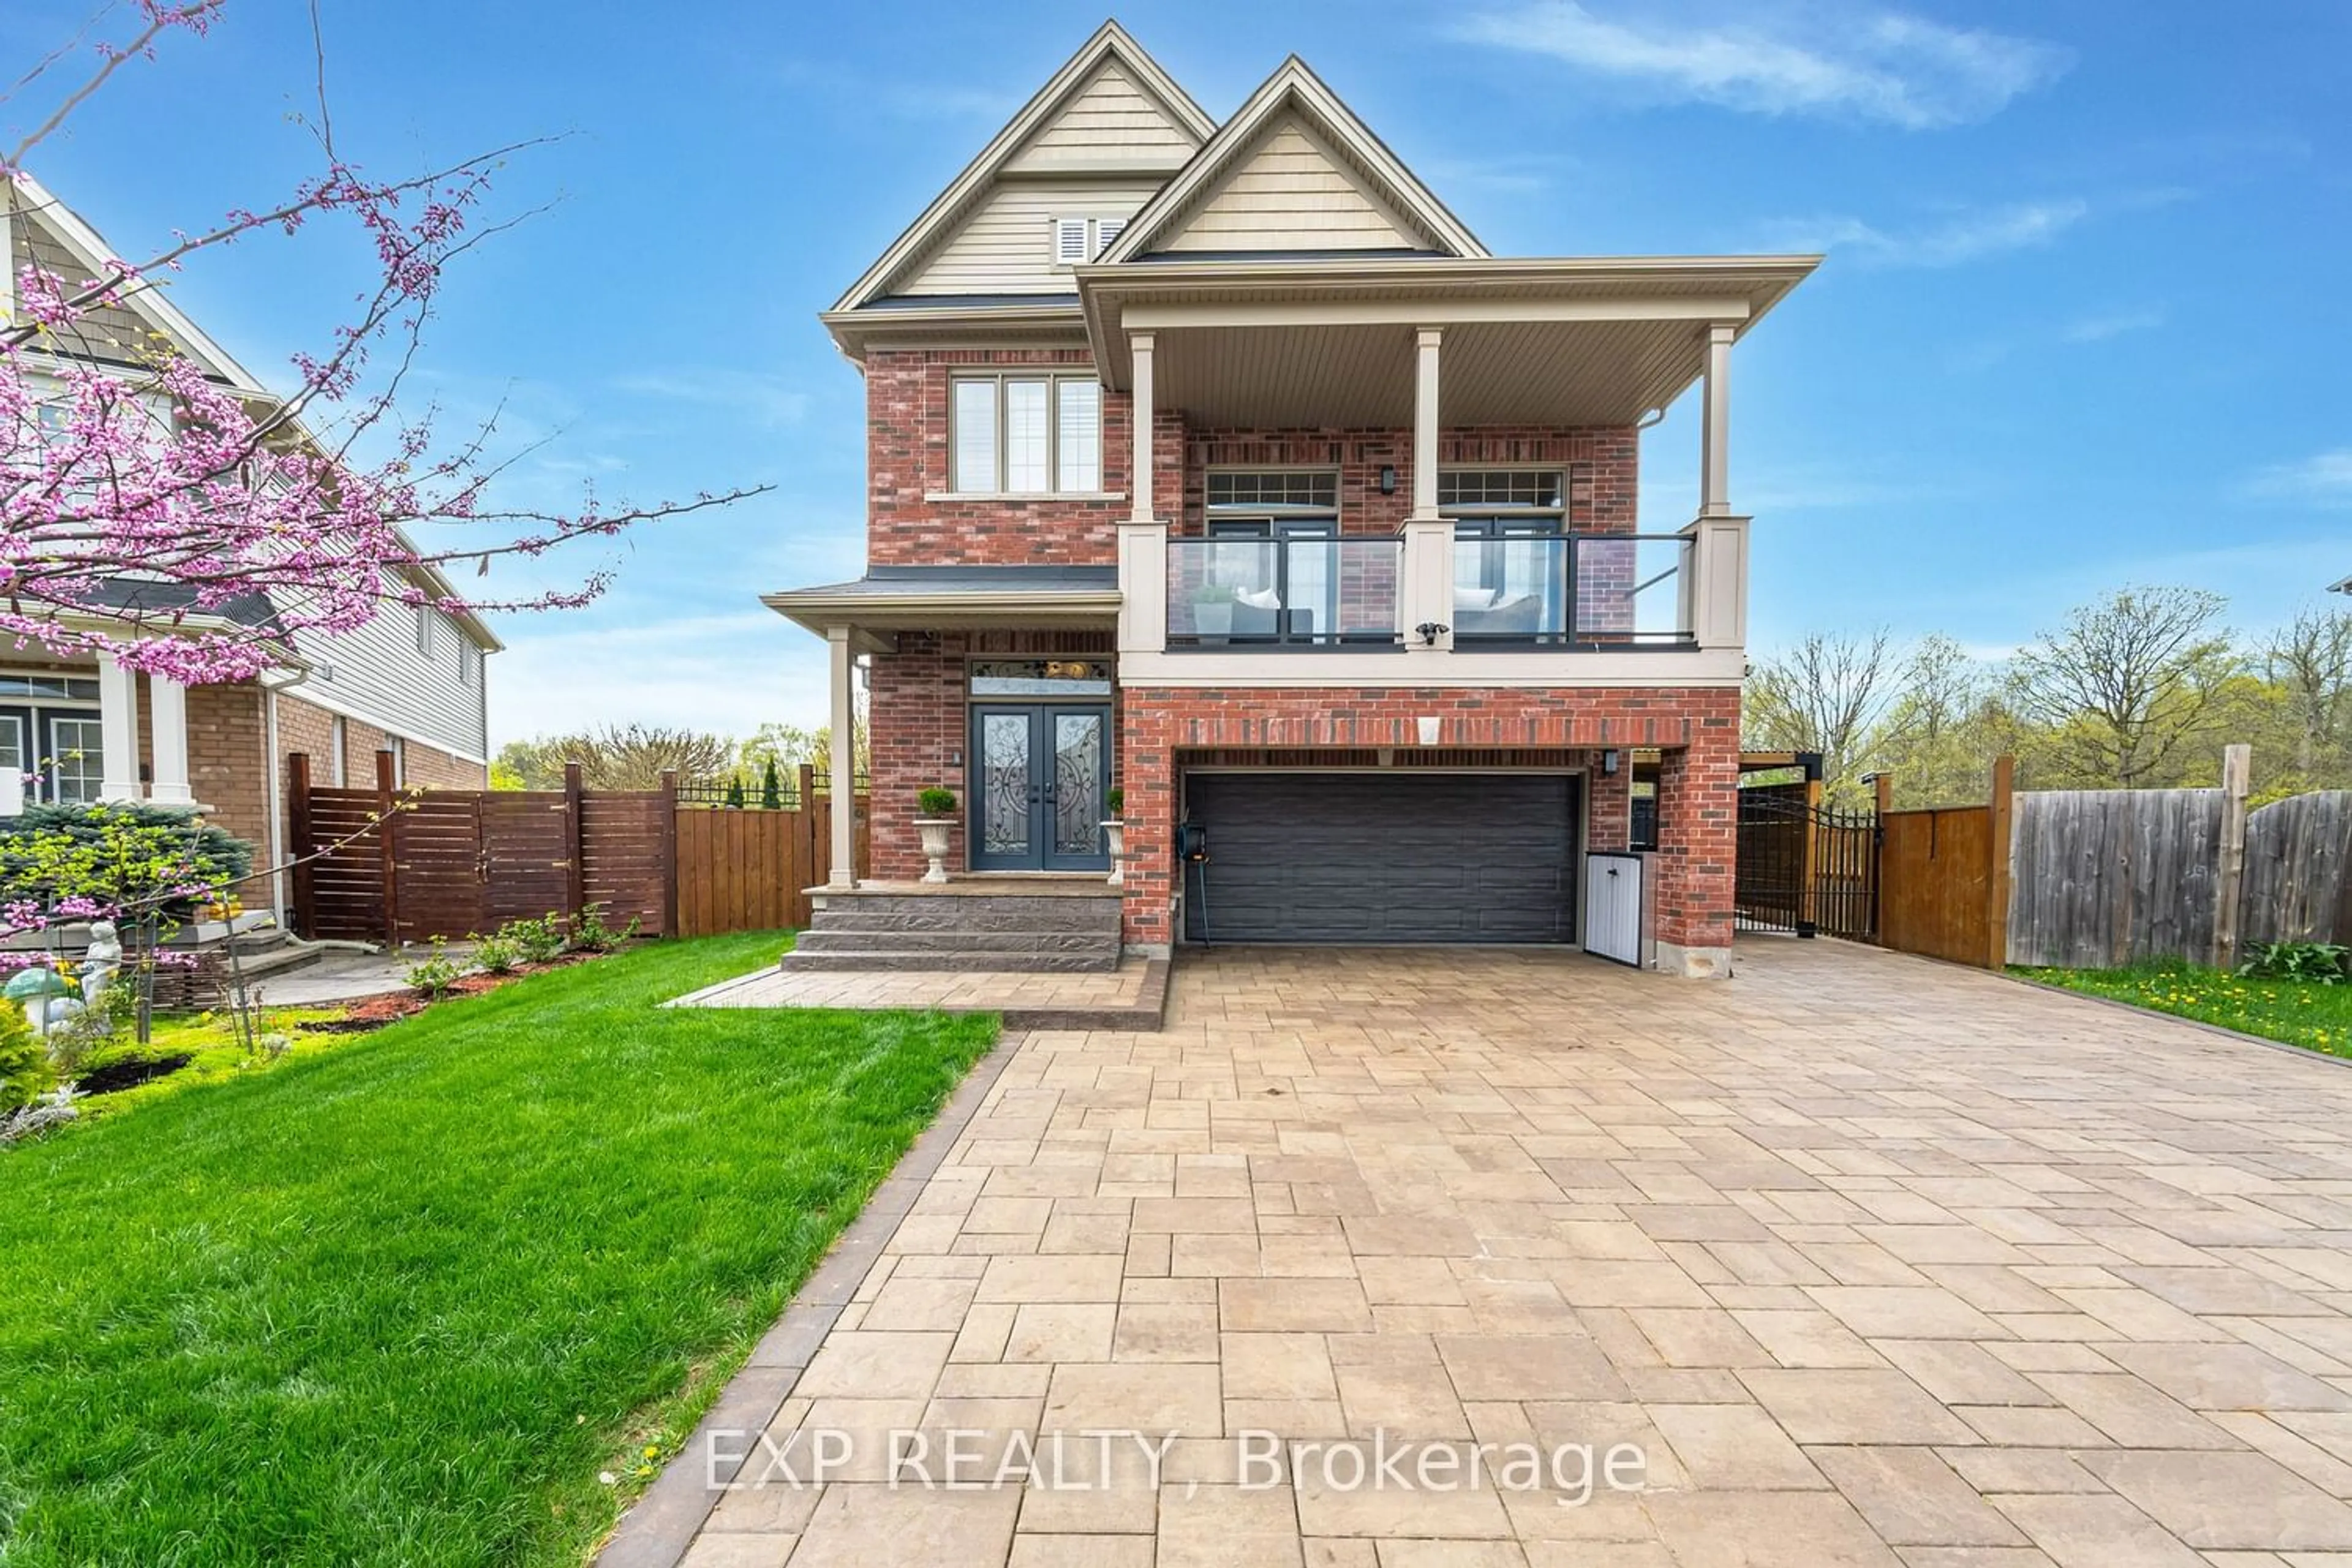 Home with brick exterior material for 8799 Dogwood Cres, Niagara Falls Ontario L2G 7V7